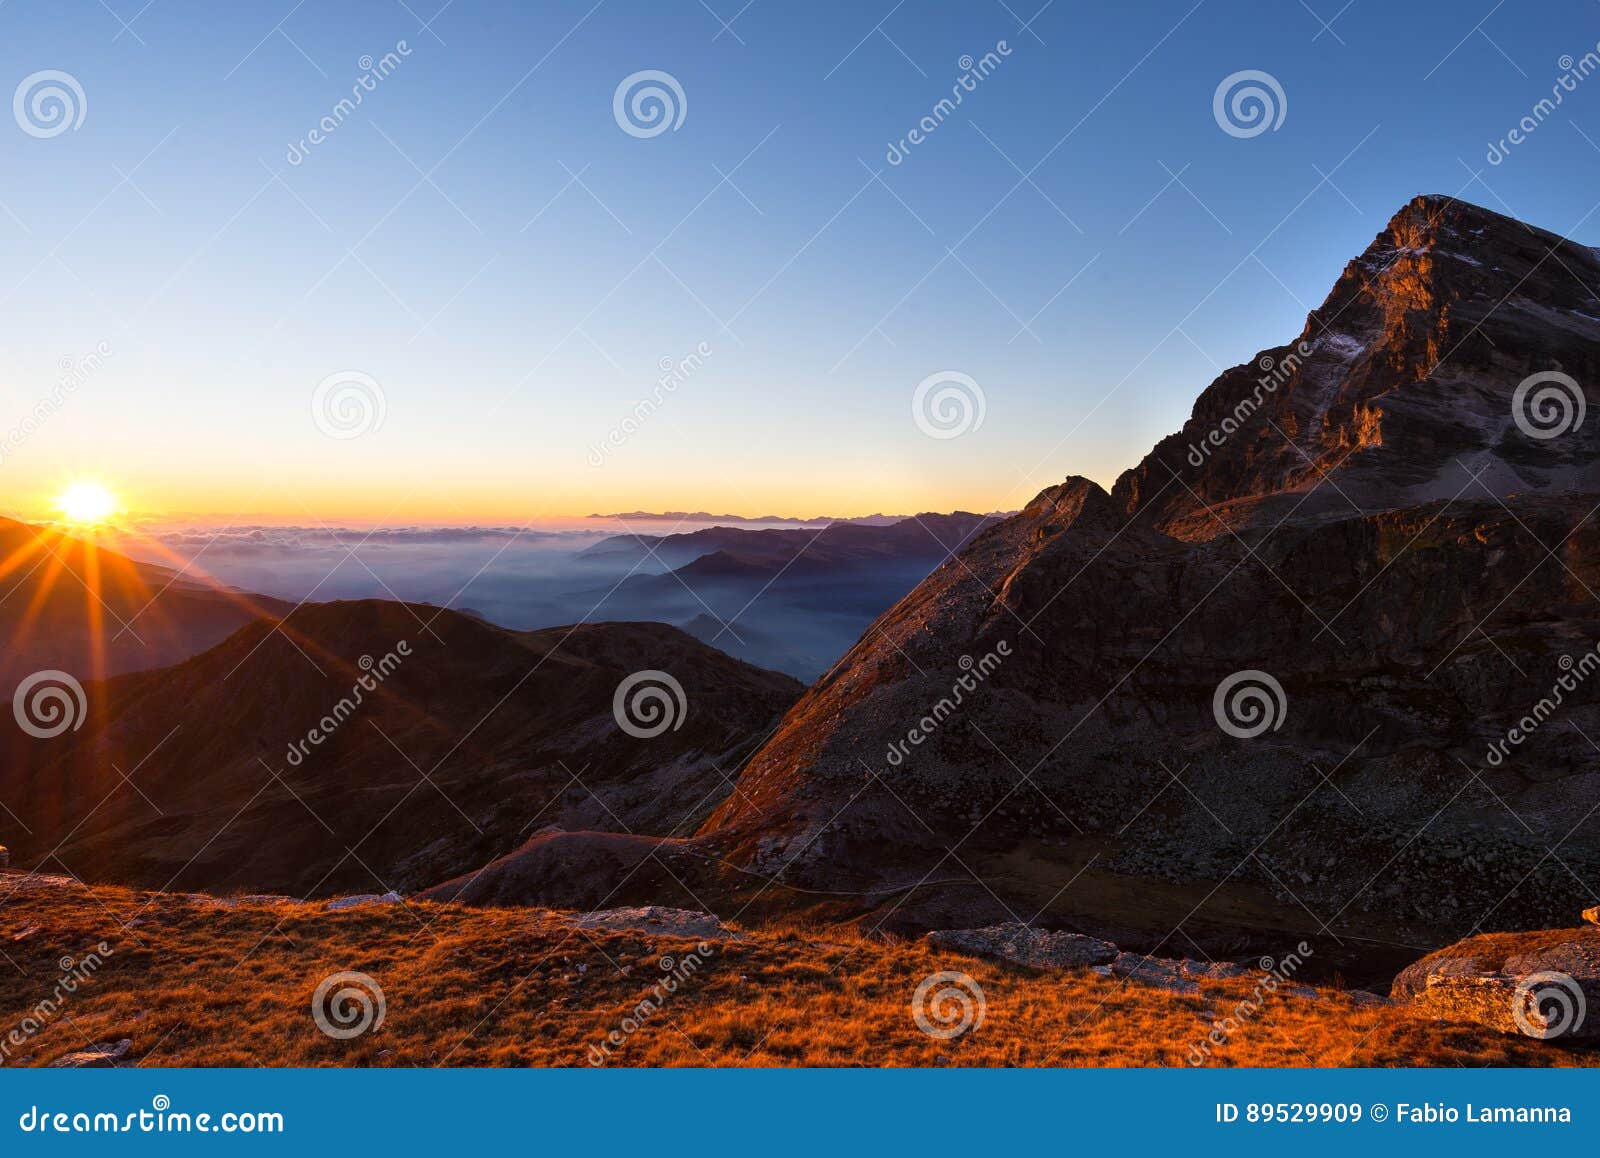 Mountain Range at Sunset, Backlight with Sunburst, Italian Alps Stock ...